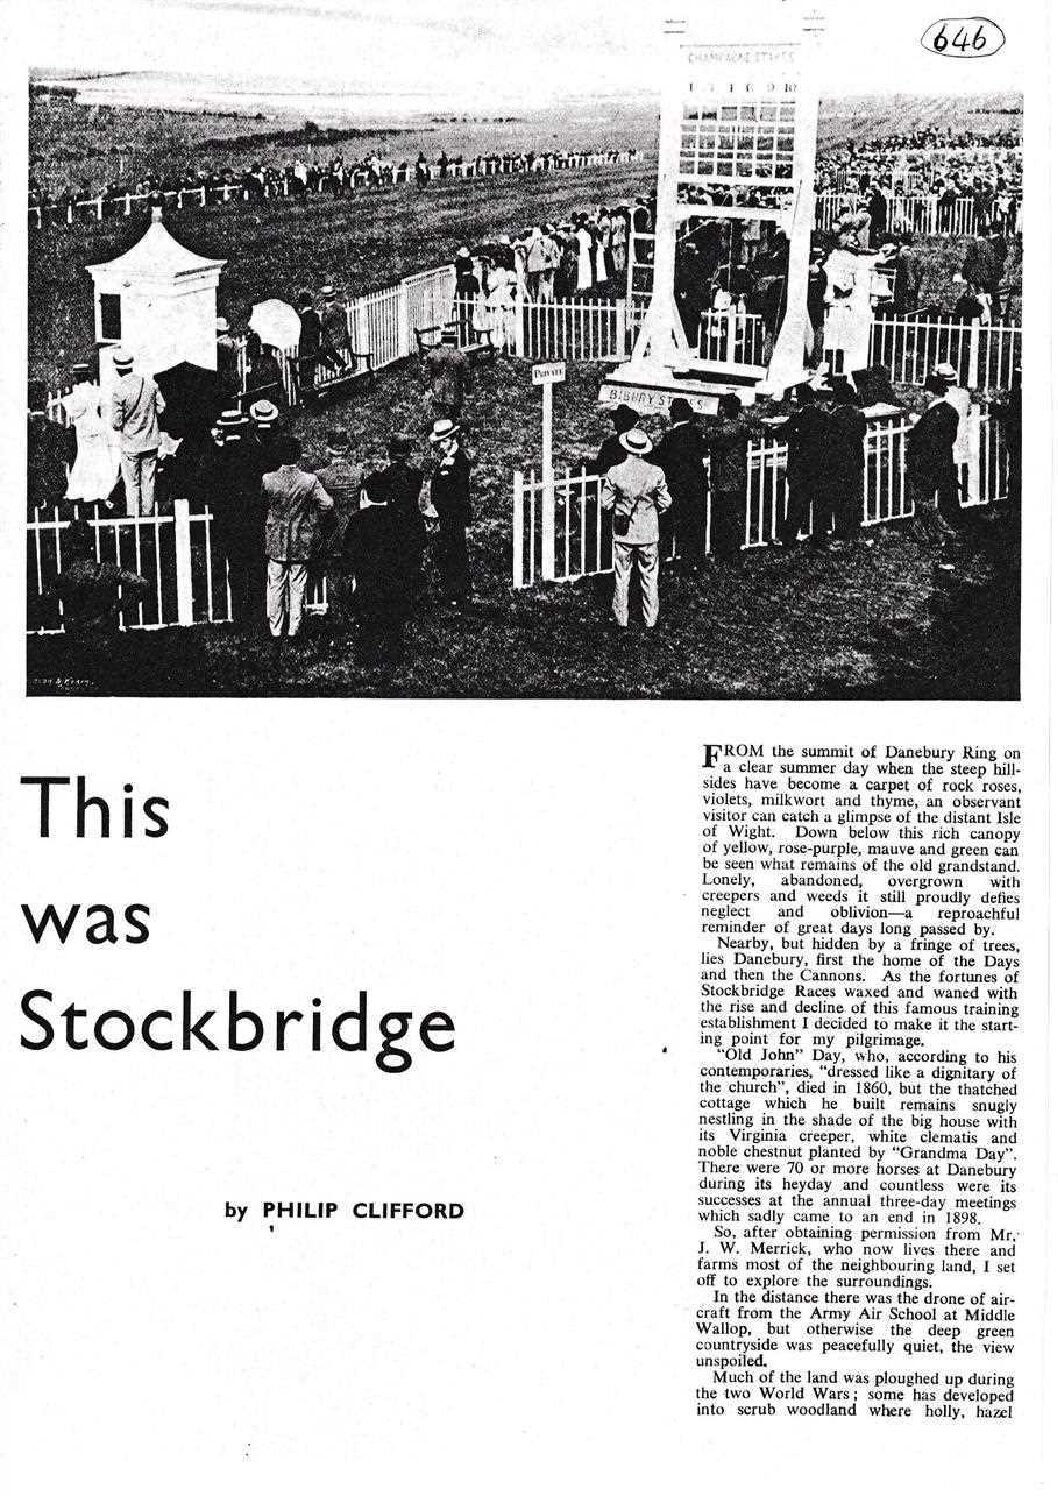 Stockbridge Races. 1753 - 1898